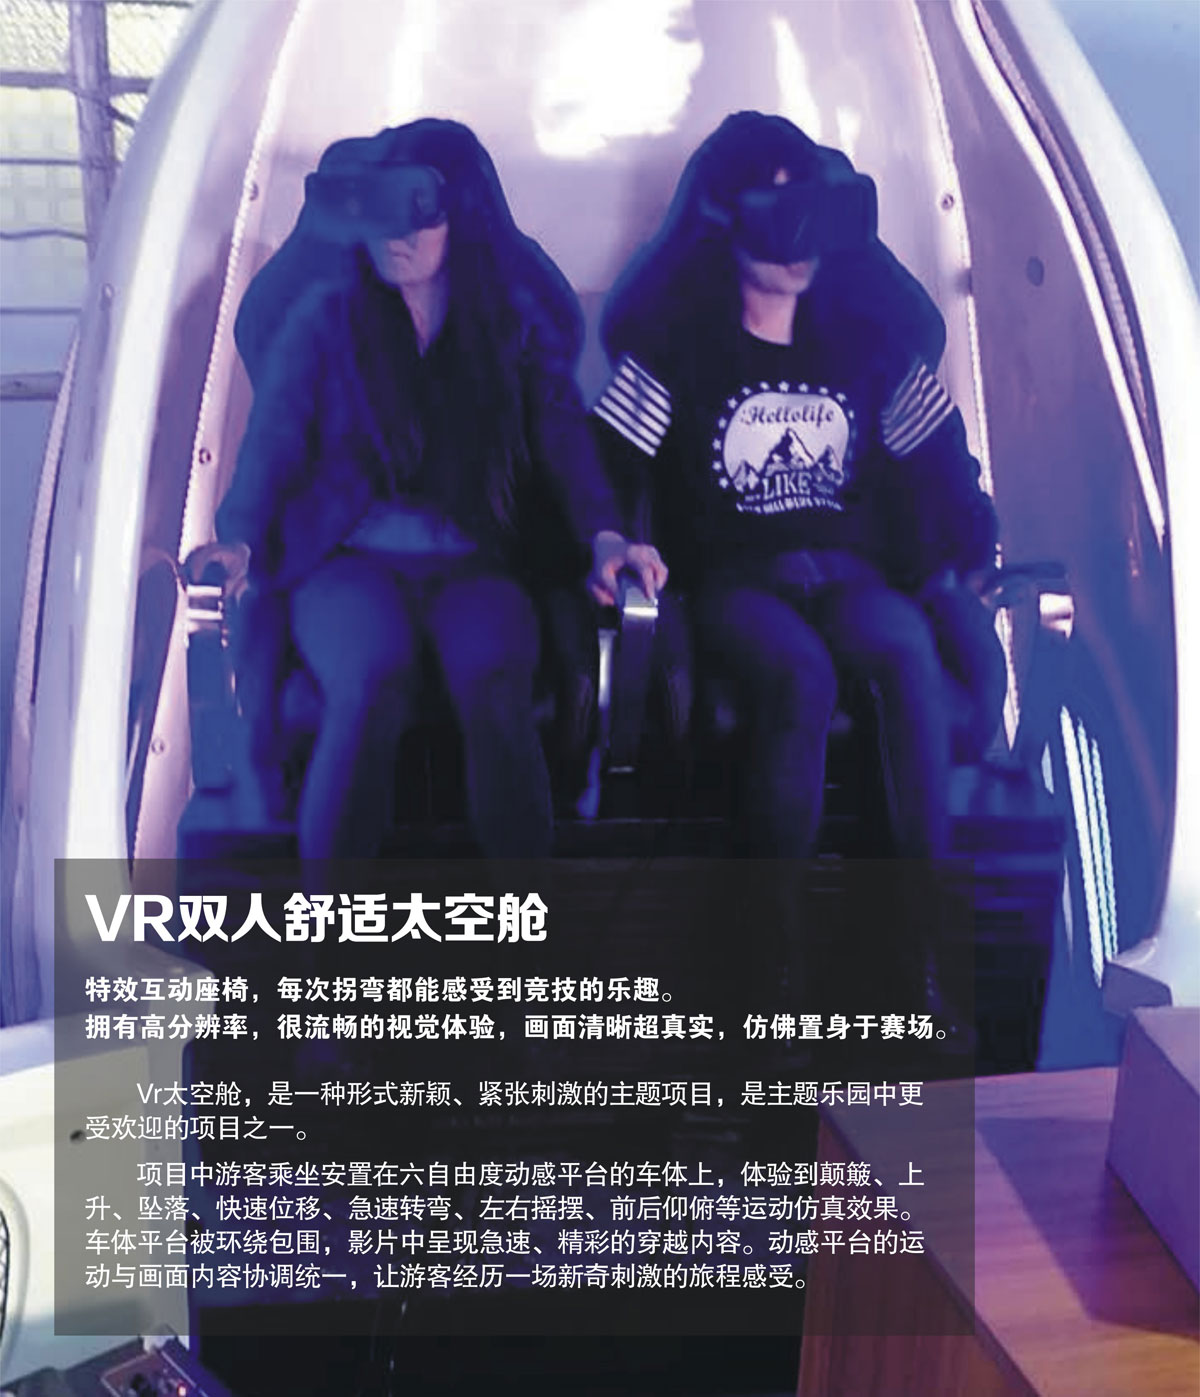 社区安全VR双人舒适太空舱.jpg